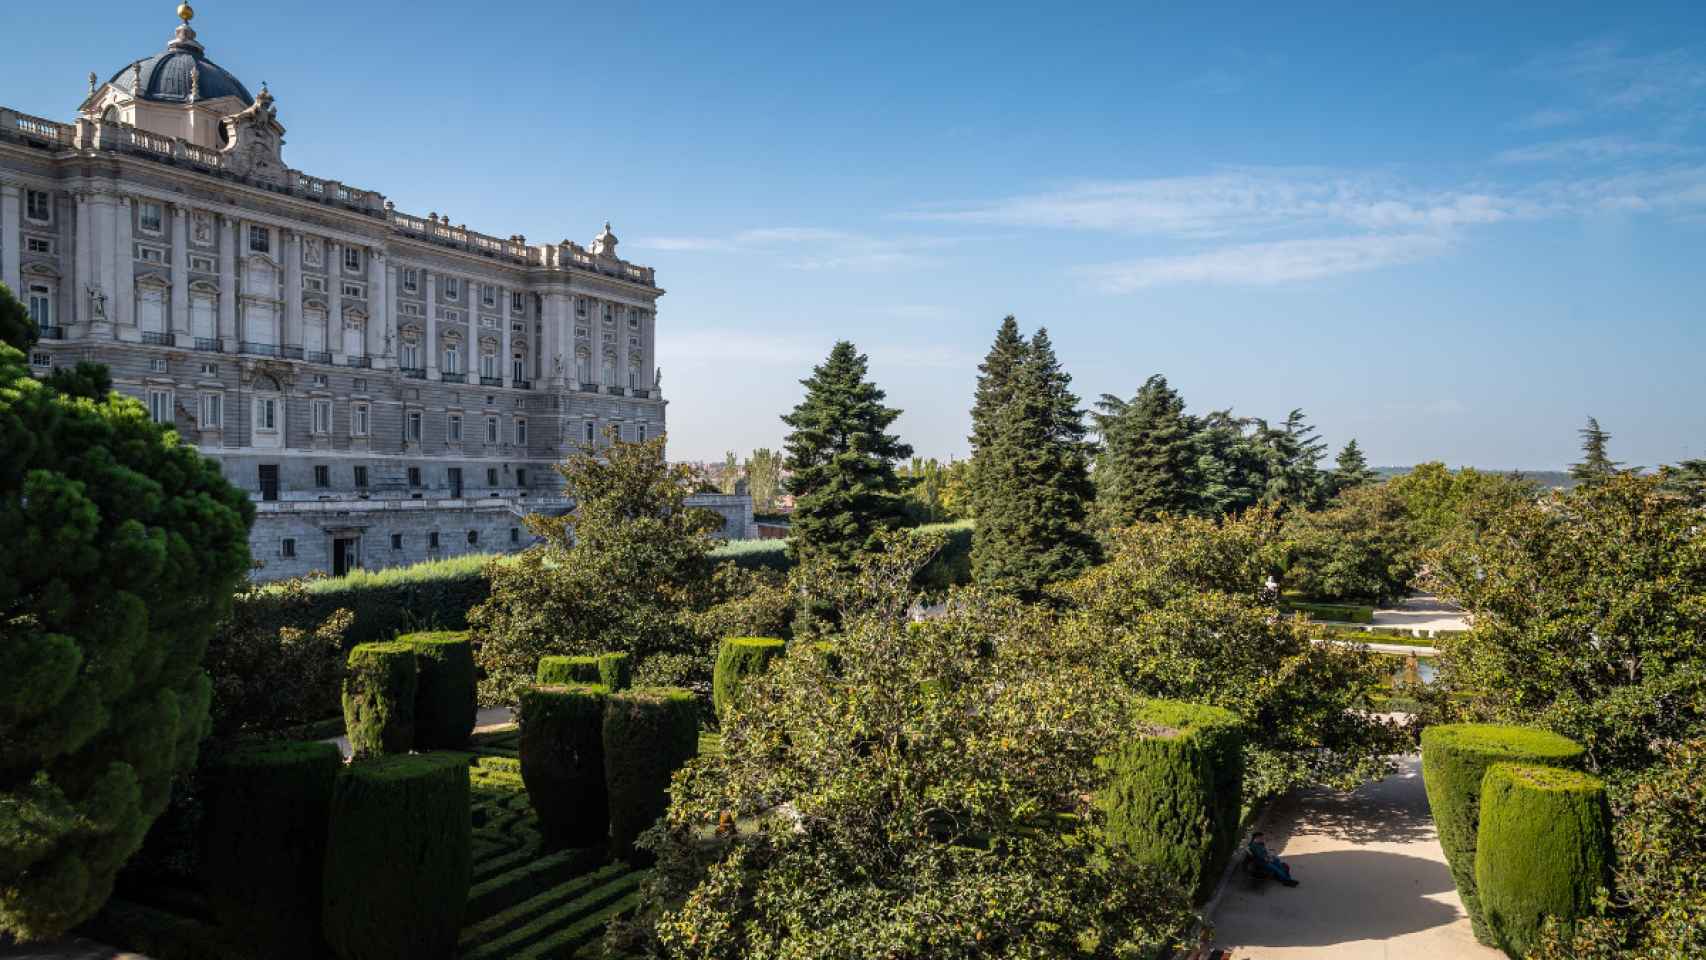 Los Jardines de Sabatini y el Palacio Real de Madrid.